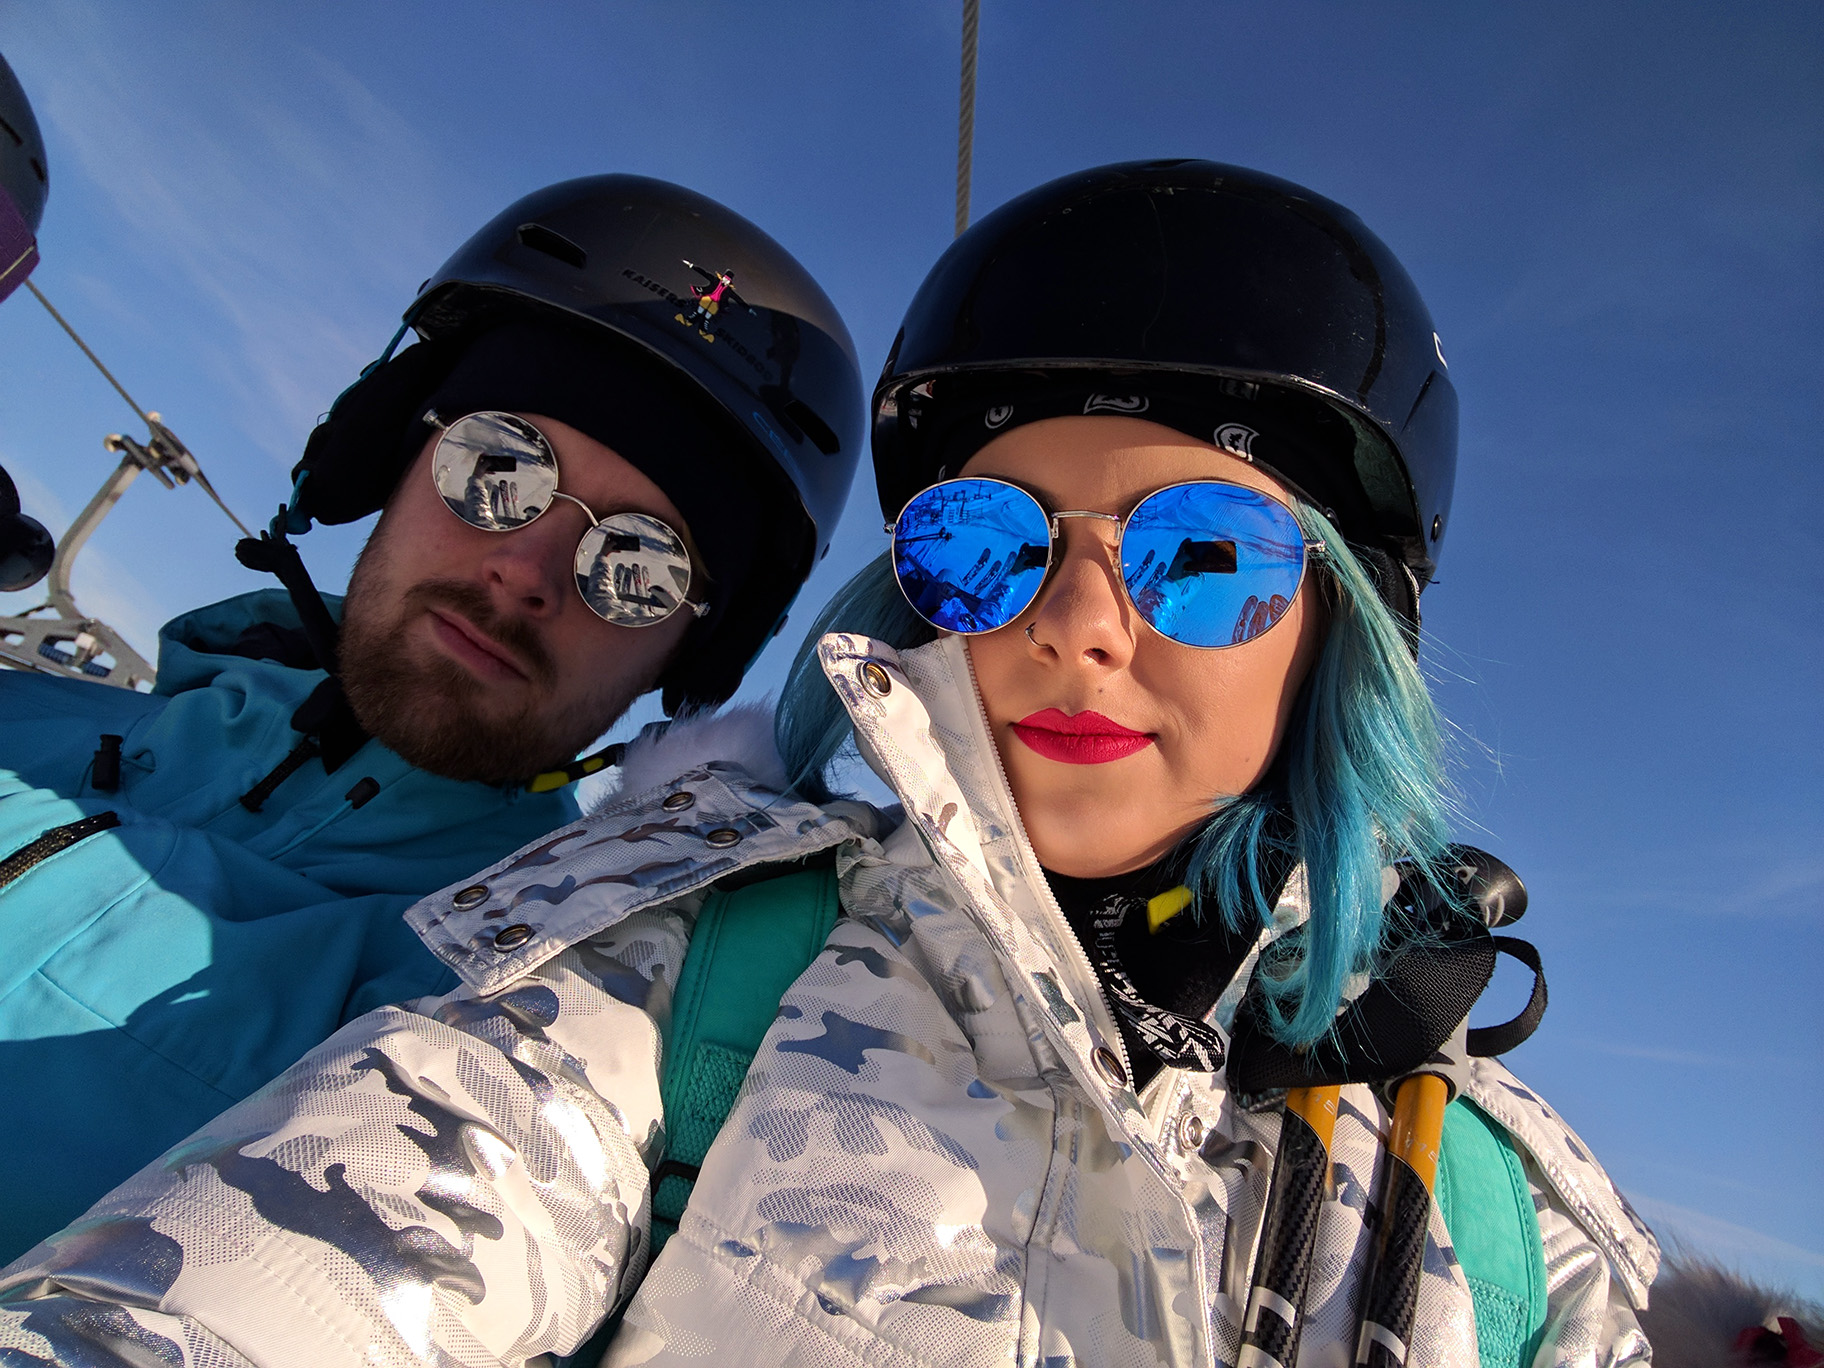 skiing in lindvallen sweden